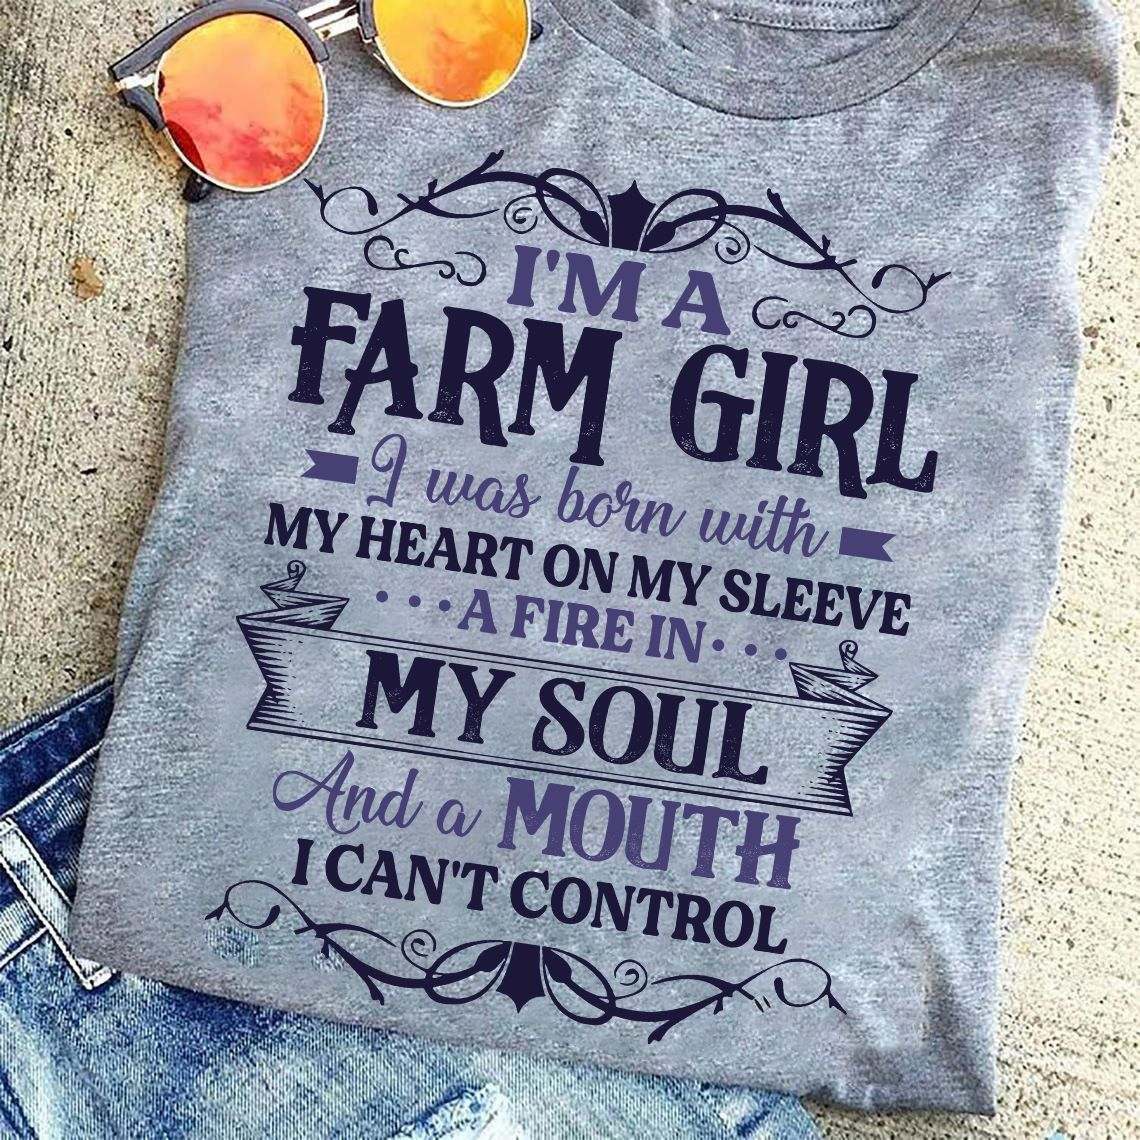 I'm a farm girl I was born with my heart on my sleeve, a fire in my soul - Farmer the job